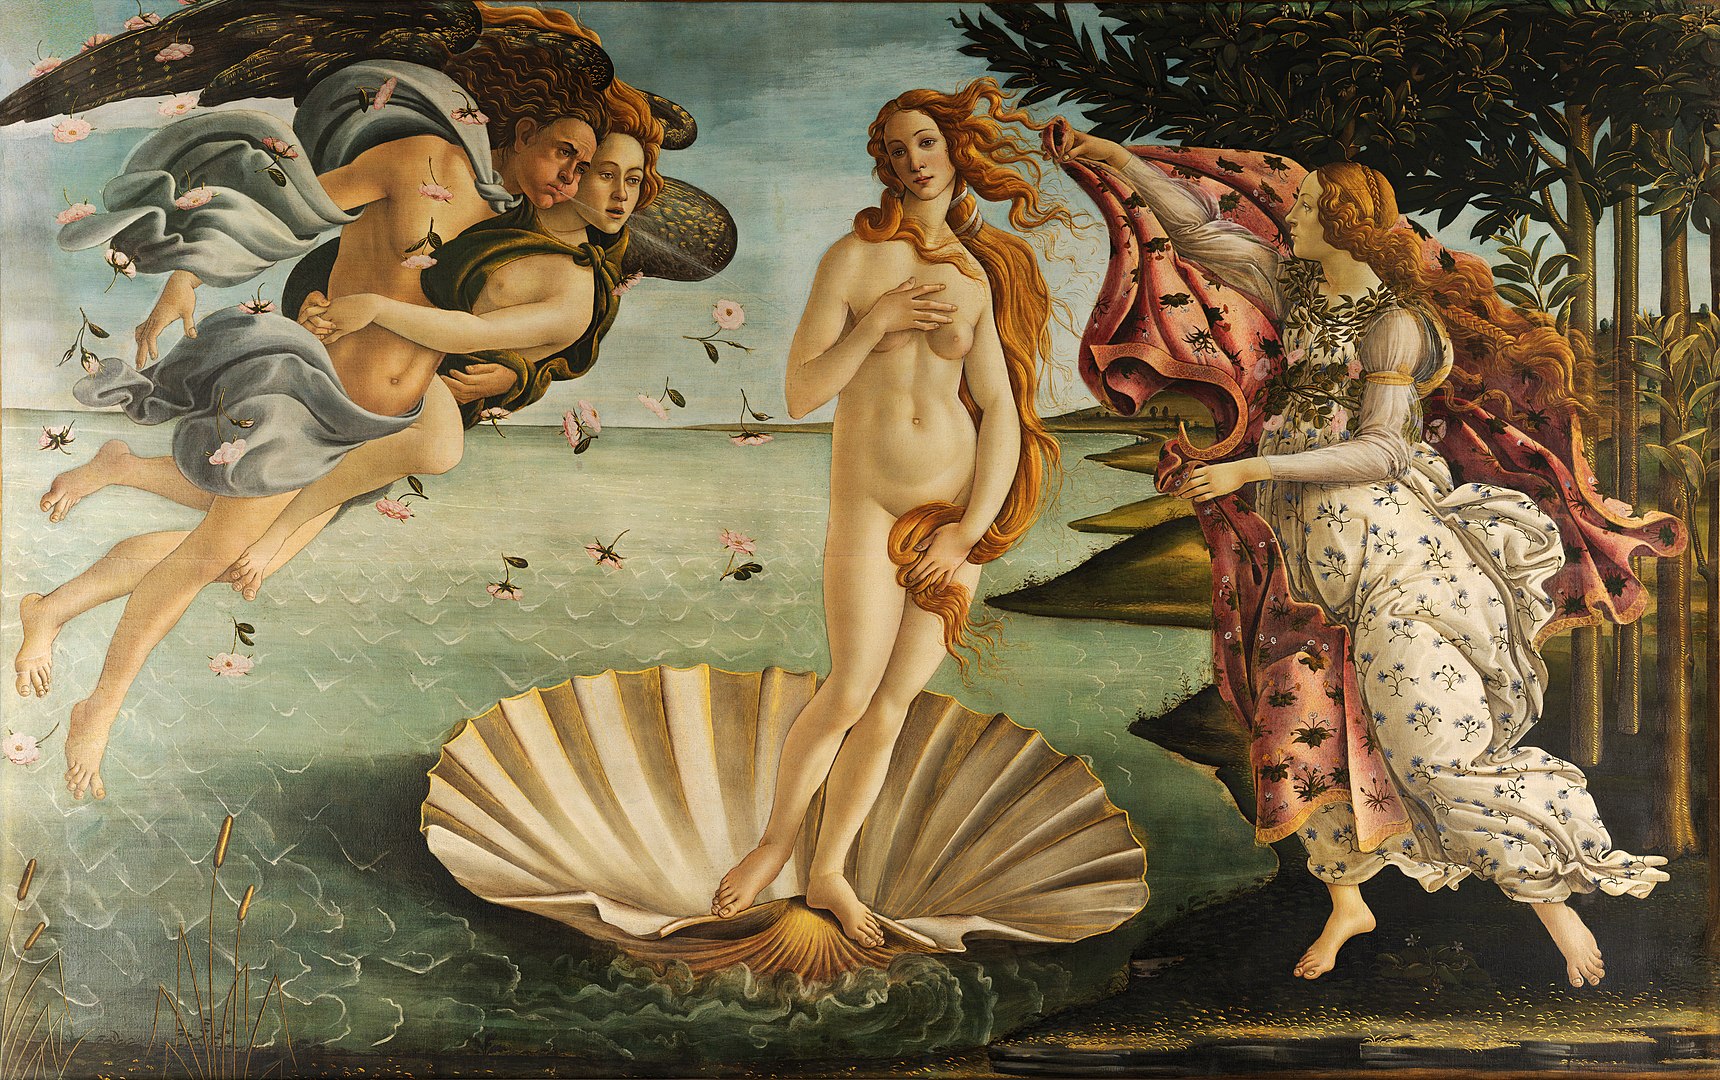 Nașterea lui Venus by Sandro Botticelli - cca. 1484–1486 - 172.5 x 278.5 cm 